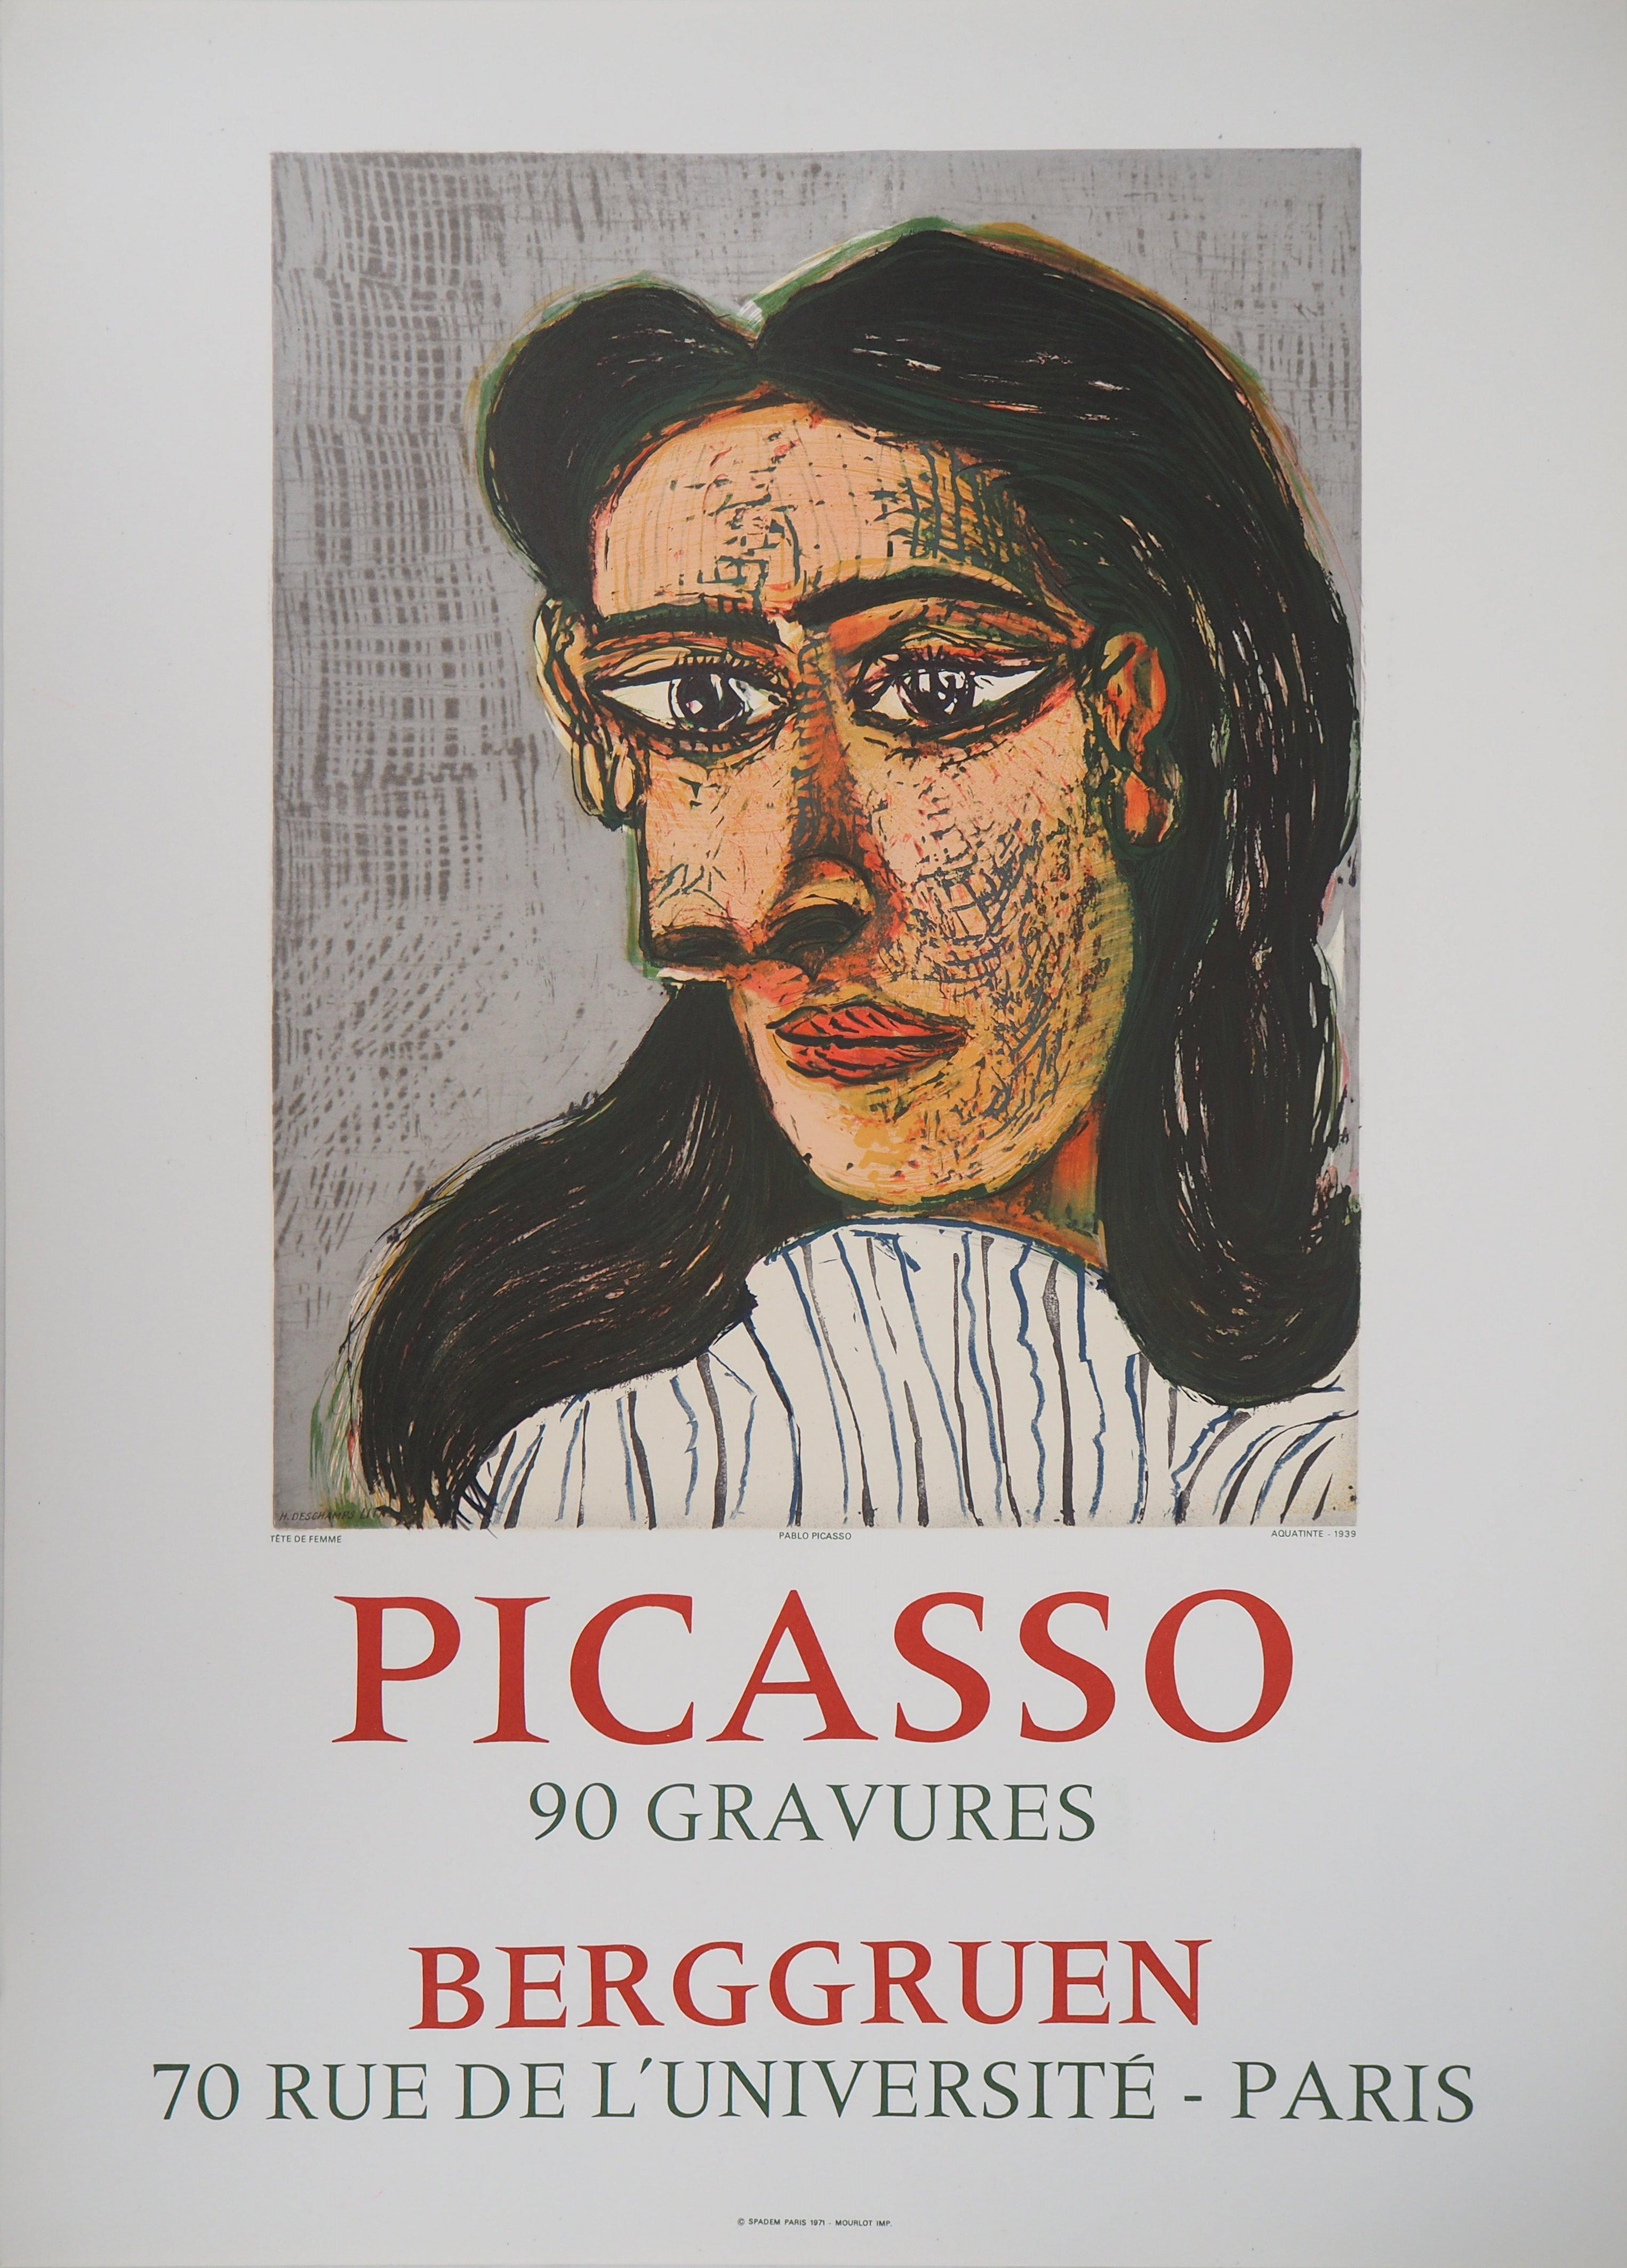 Portrait Print (after) Pablo Picasso - Portrait de femme - Affiche lithographique : Berggruen  - Mourlot 1971 (Cwiklitzer #386)